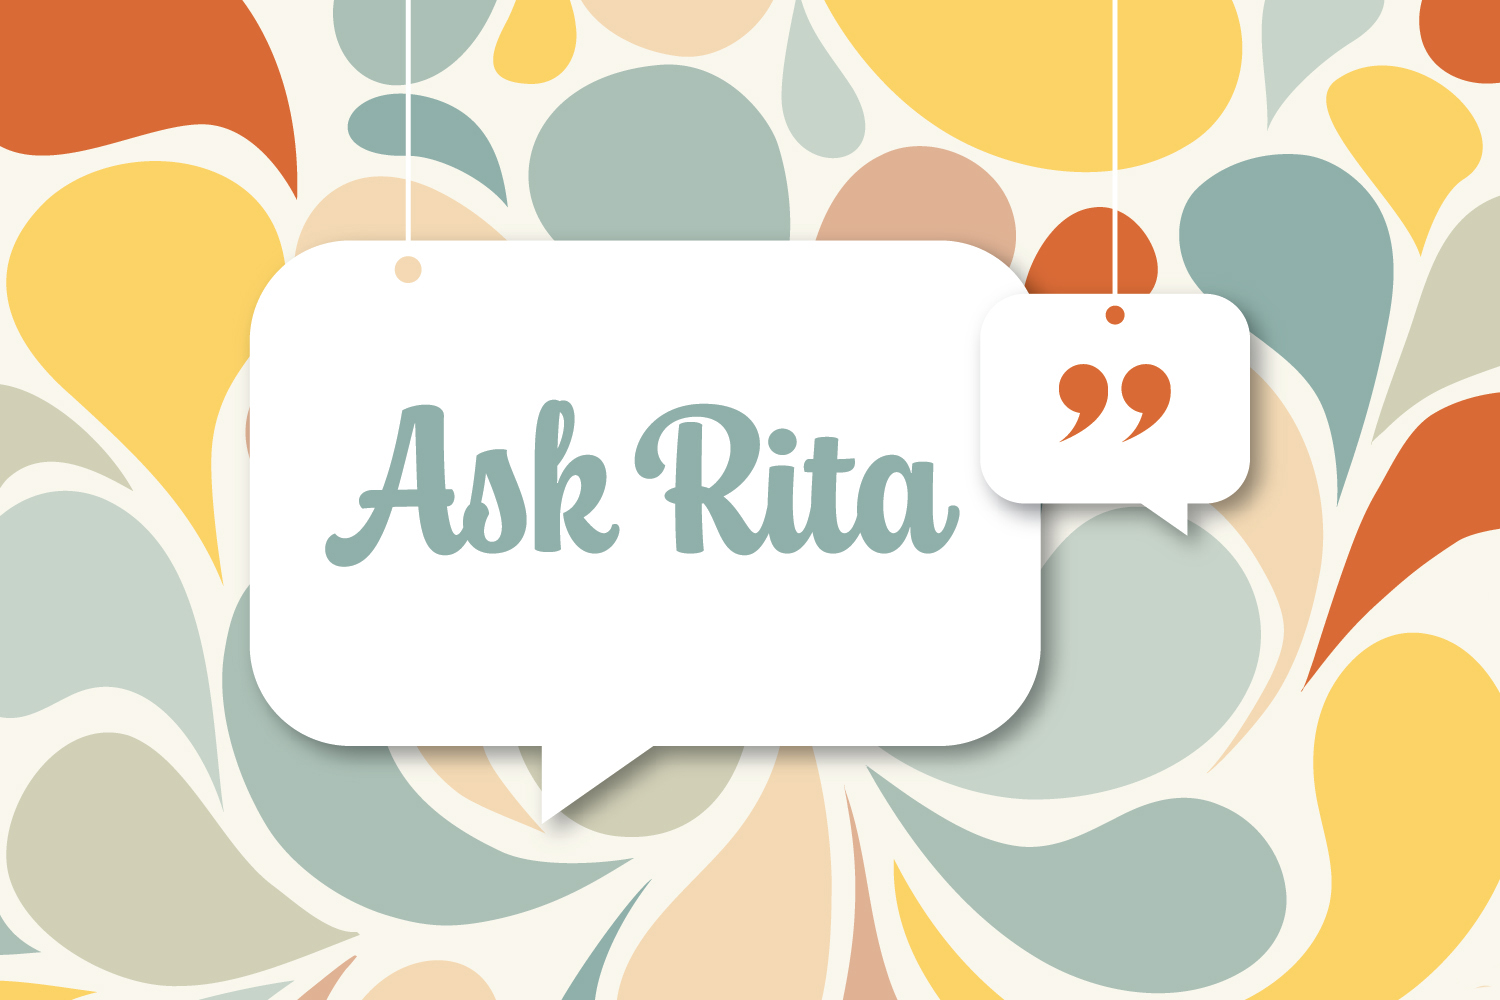 Ask Rita: Can I Just Hire Independent Contractors?